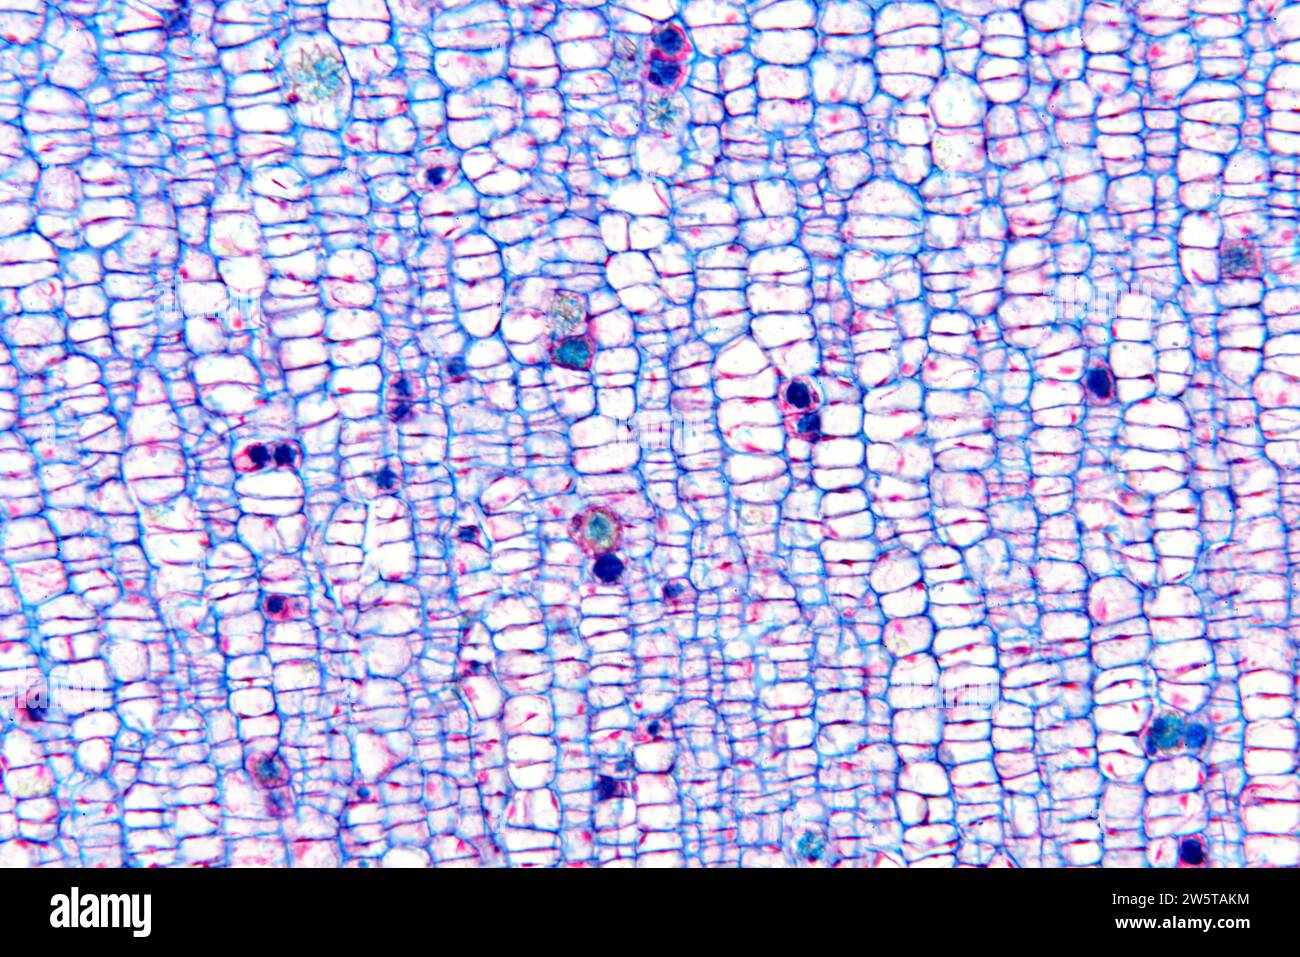 Raphide von Calciumoxalat in einer Pflanze Zelleln. Photomikrograph X100 mit einer Breite von 10 cm. Stockfoto